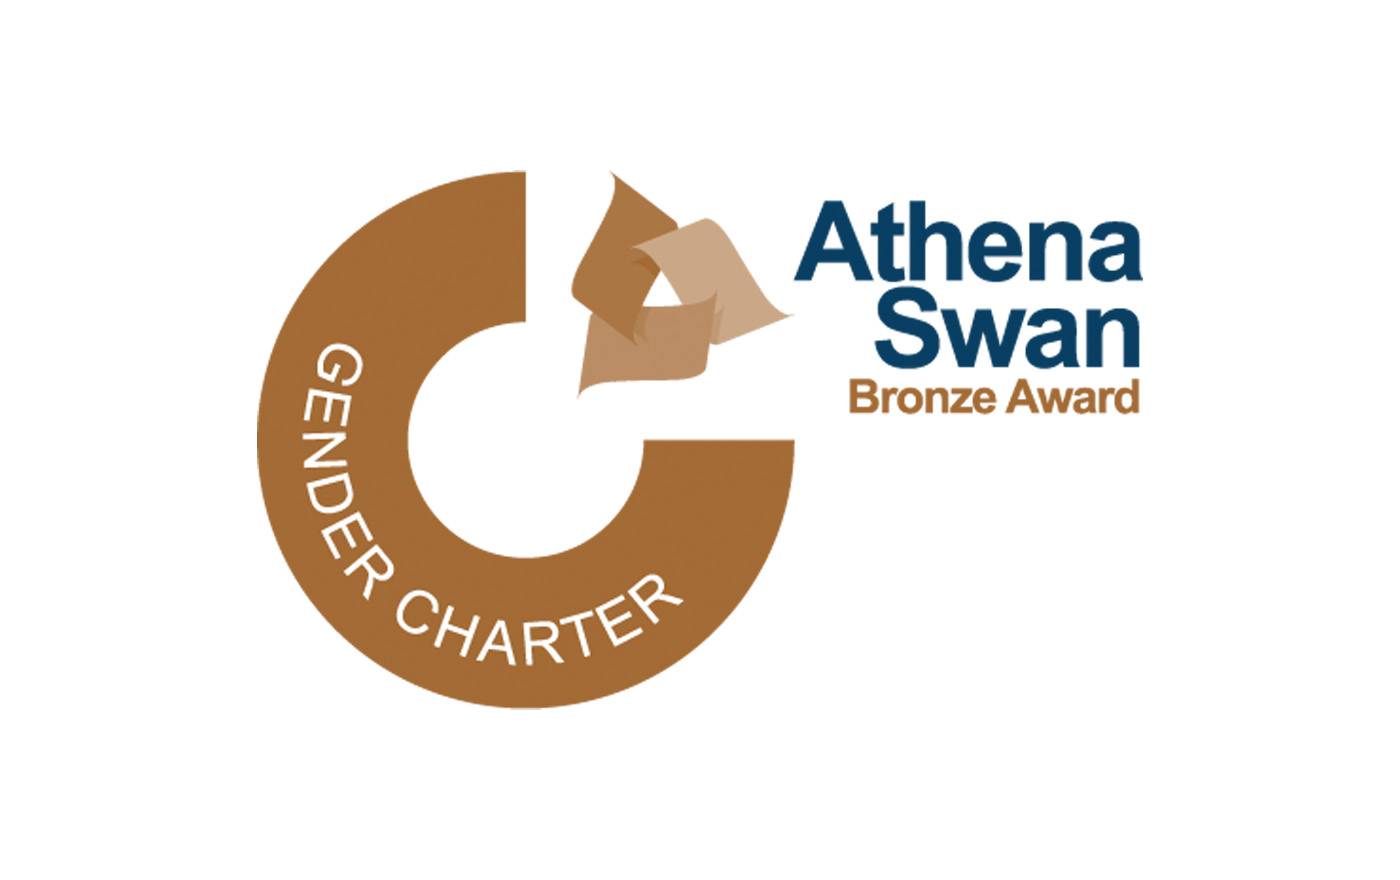 The Athena Swan Bronze Award logo